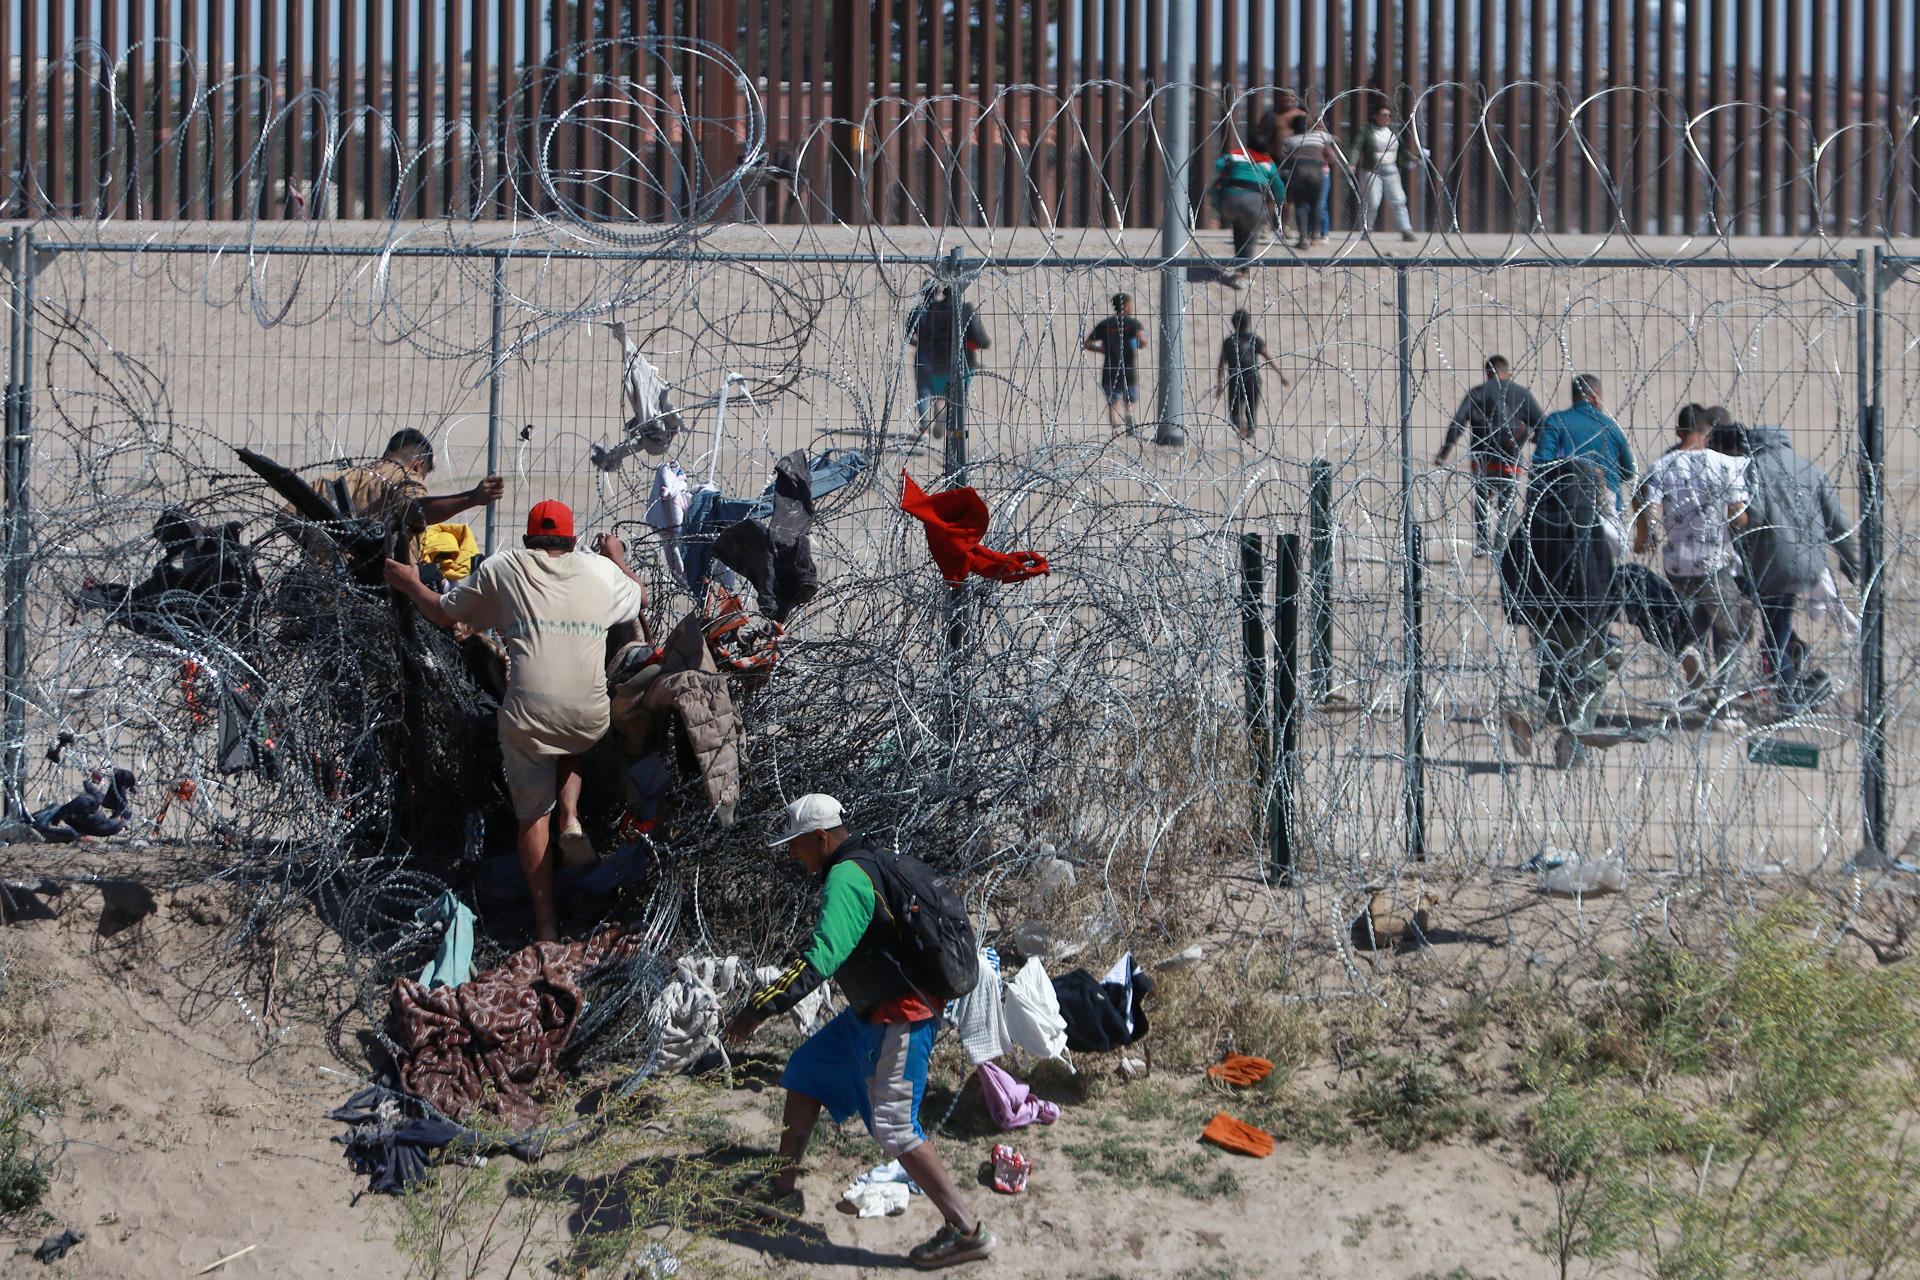 Migrantes cruzan una alambrada de navajas y púas, en la frontera que divide a México de los Estados Unidos en Ciudad Juárez (México). Fotografía de archivo. EFE/Luis Torres